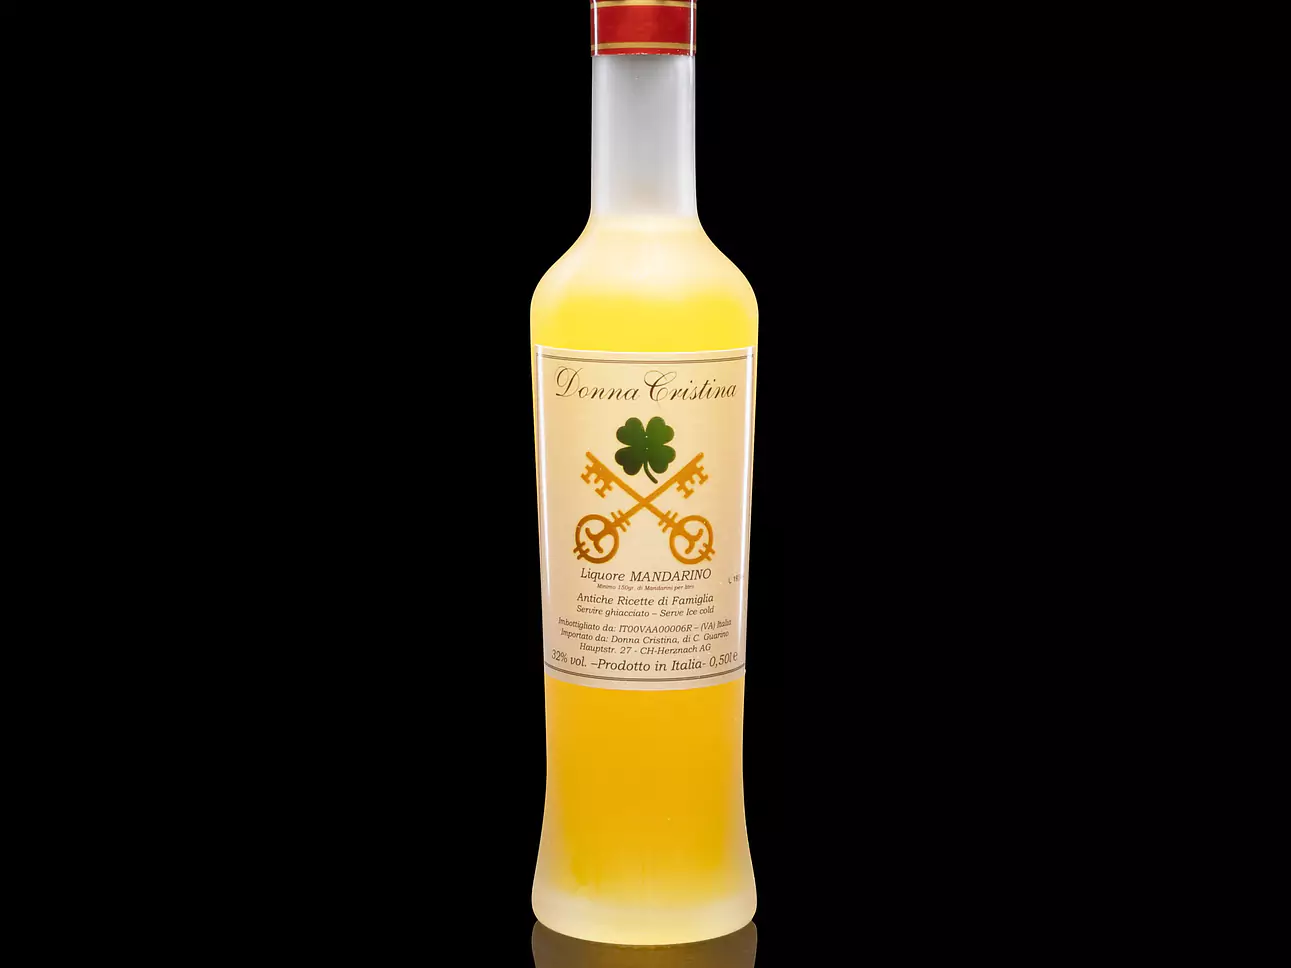 Donna Cristina Liquore Mandarino- Antiche Ricette di Famiglia